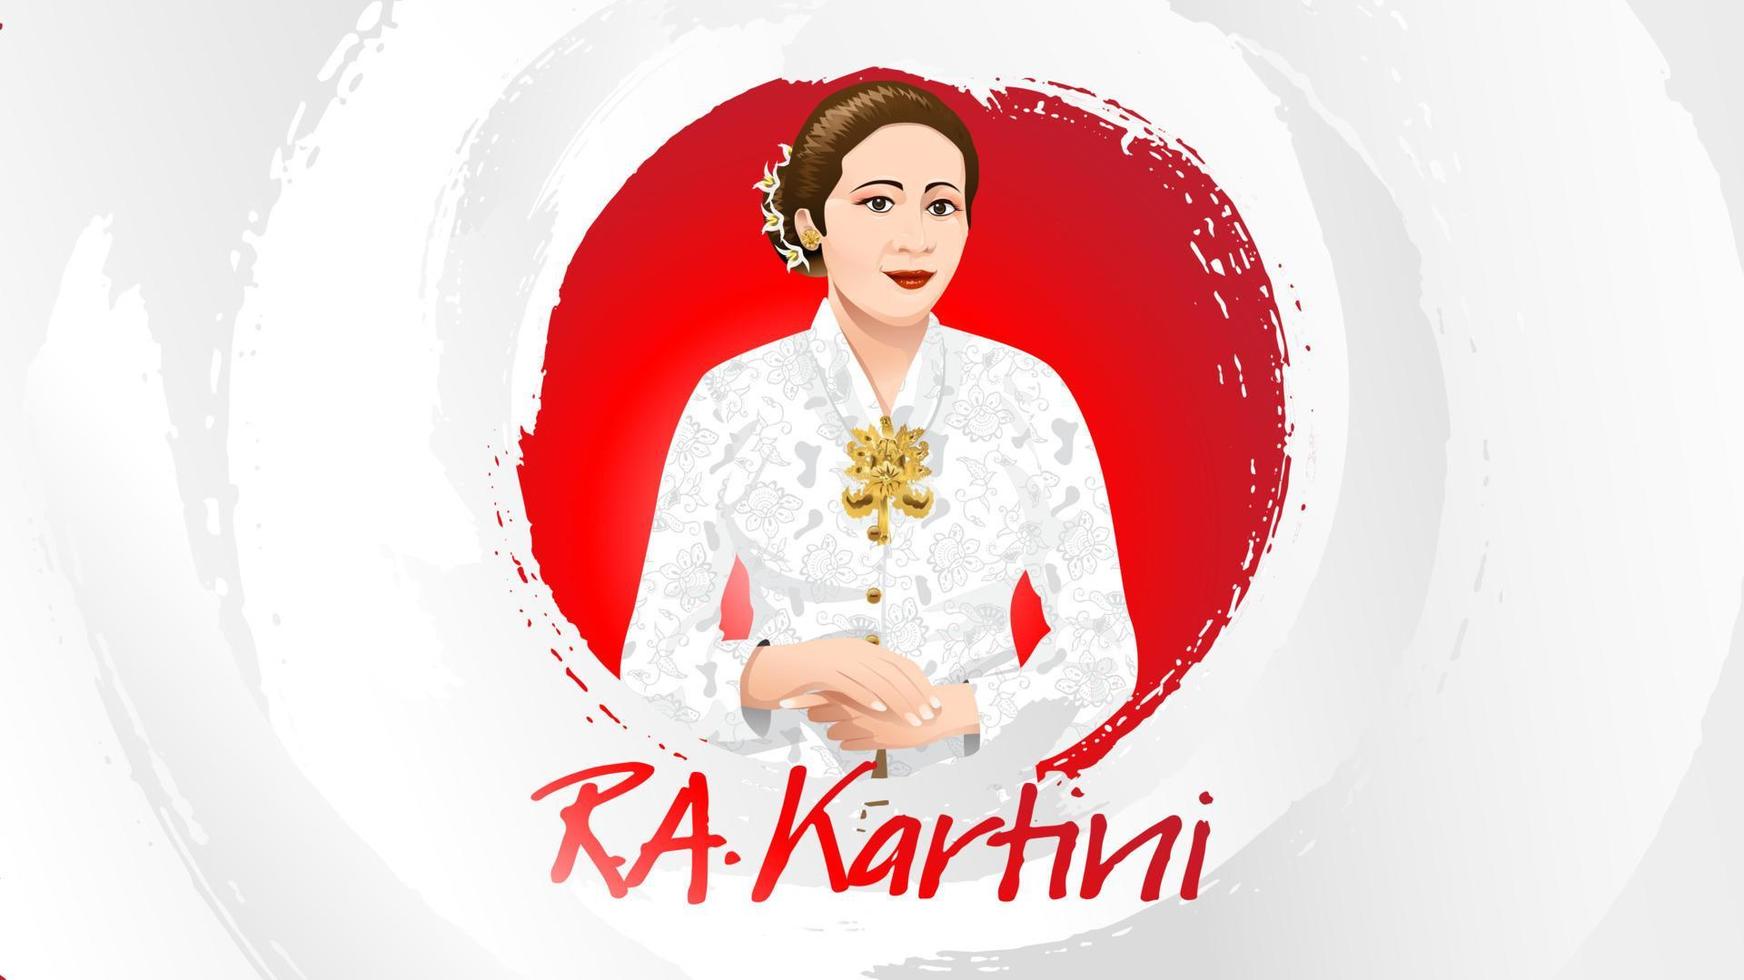 jour kartini, ra kartini les héros des femmes et des droits de l'homme en indonésie. fond de conception de modèle de bannière - vecteur